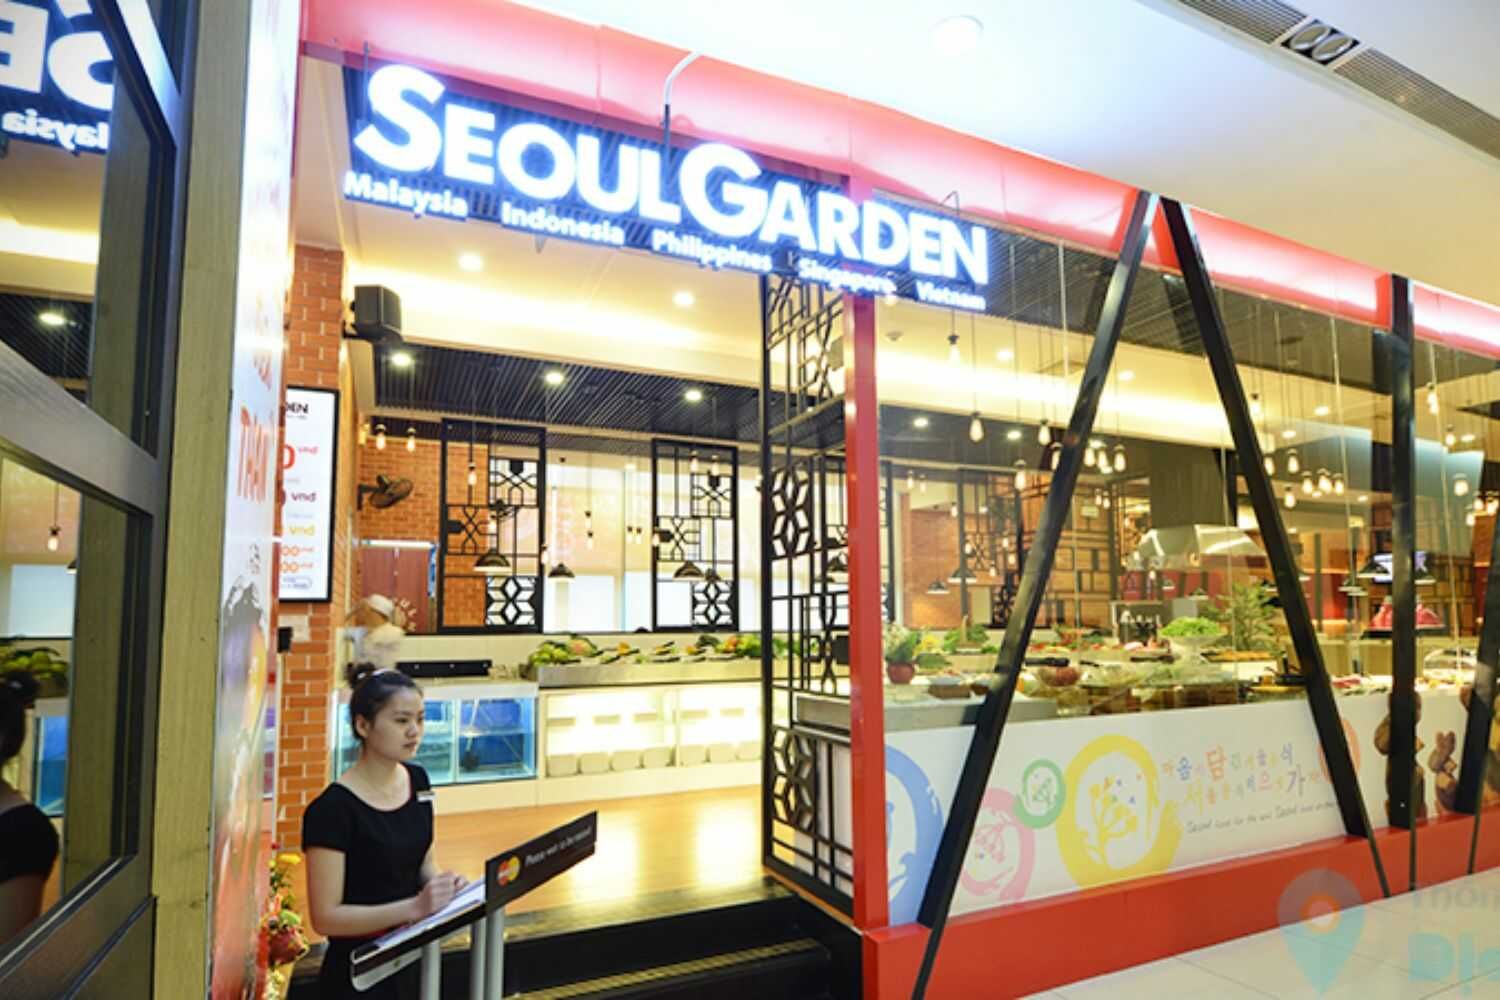 Seoul Garden - Trần Hưng Đạo